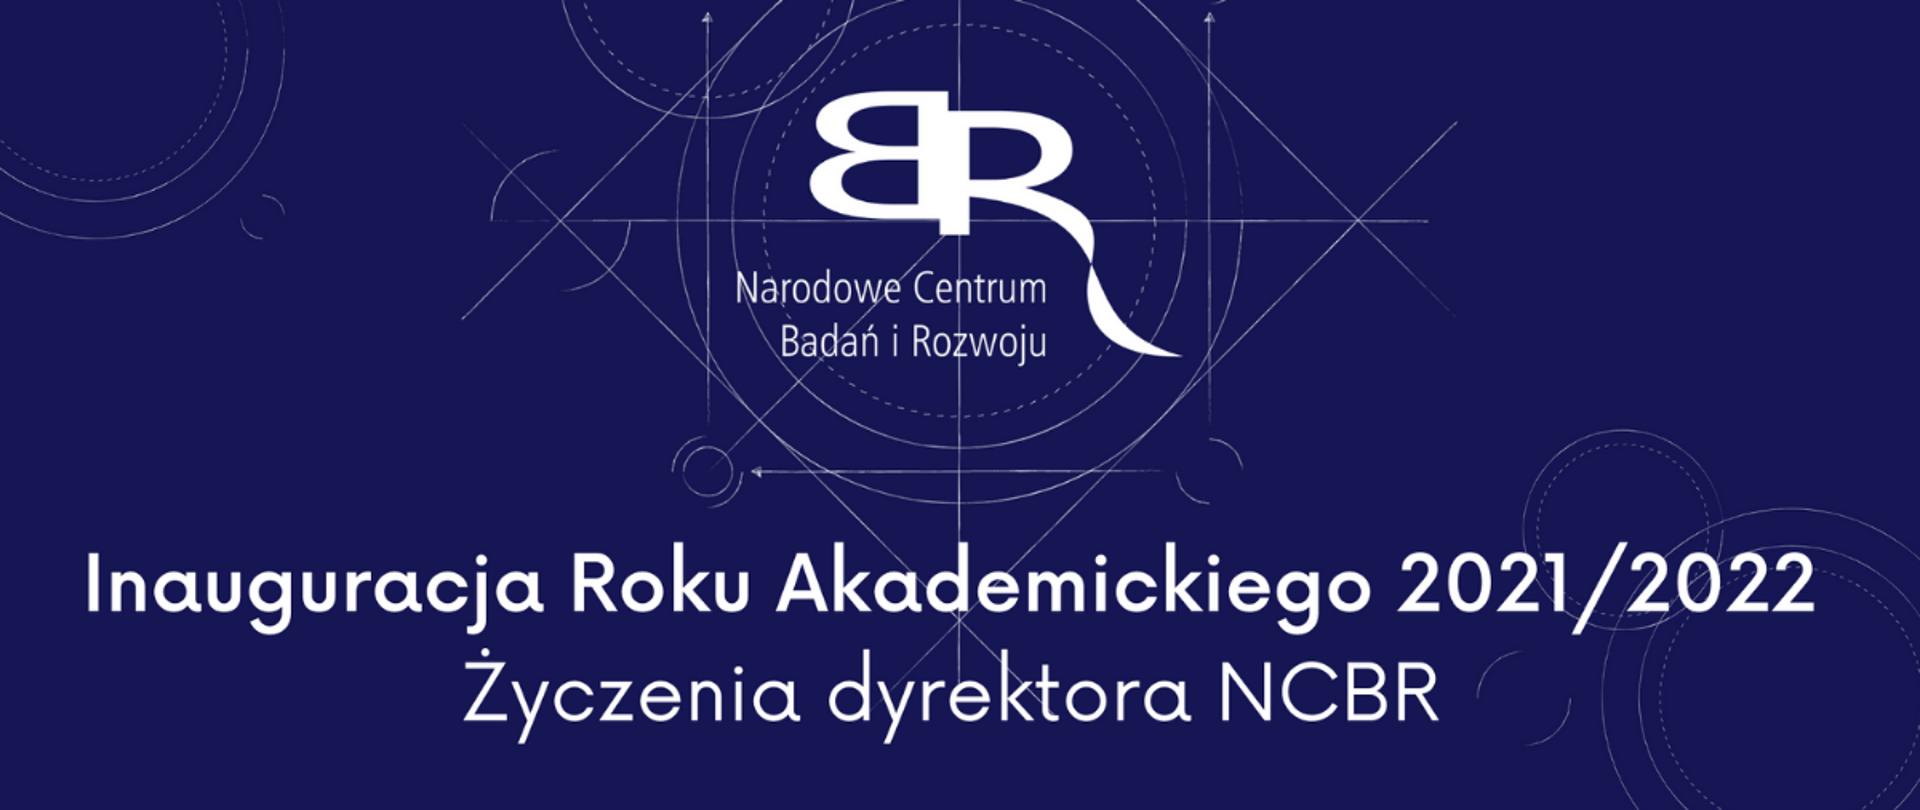 Inauguracja Roku Akademickiego 2021/2022 Życzenia dyrektora NCBR